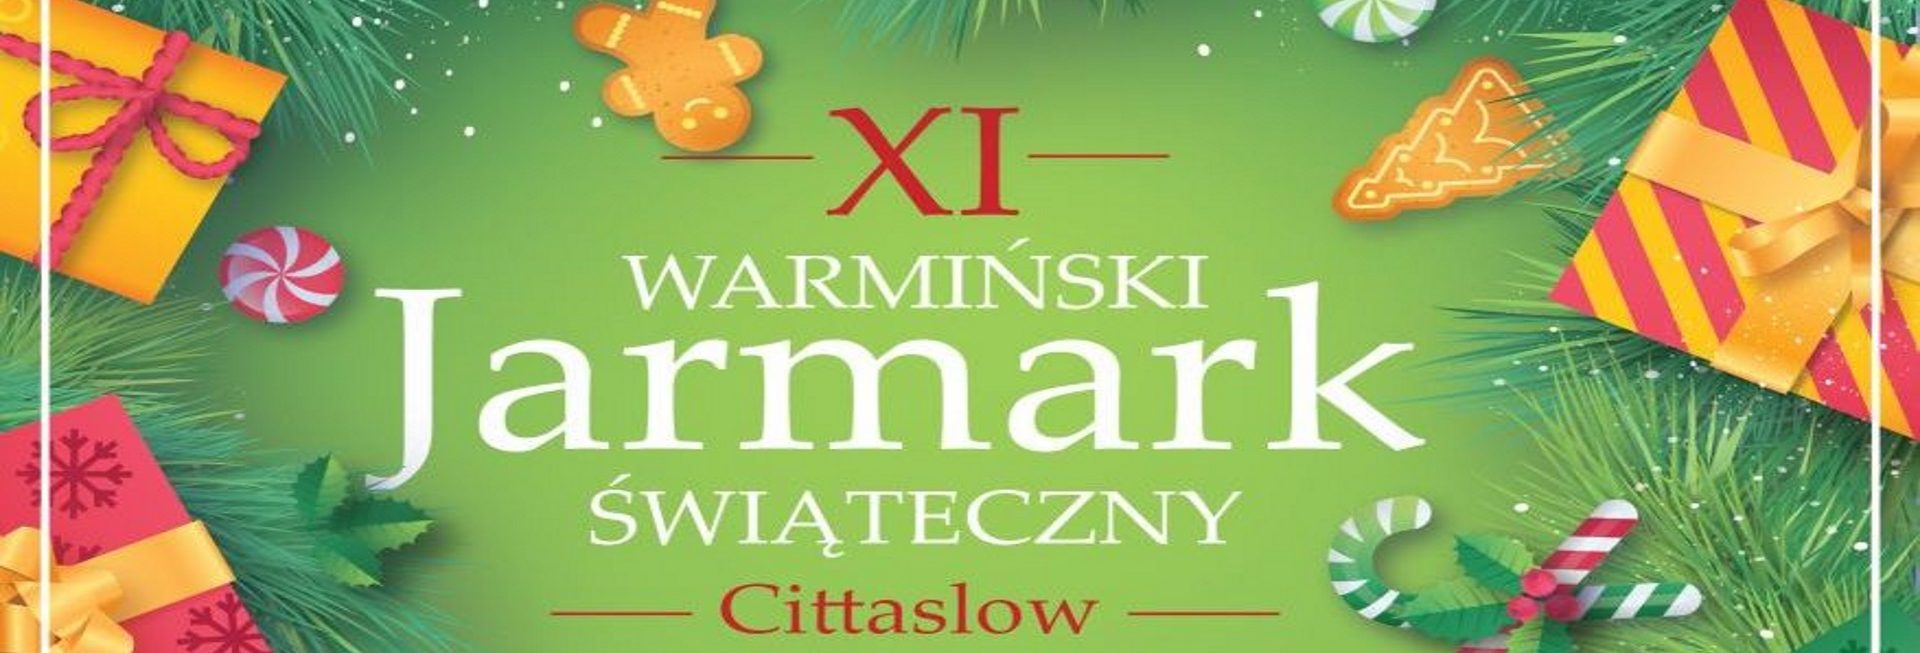 Plakat zapraszający na Warmiński Jarmark Biskupiec 2019. Zdjęcie-plakat posiada tło zielone z dodatkowymi motywami rysunkowymi prezentów. Na plakacie informacja kiedy rozpoczyna się impreza. 